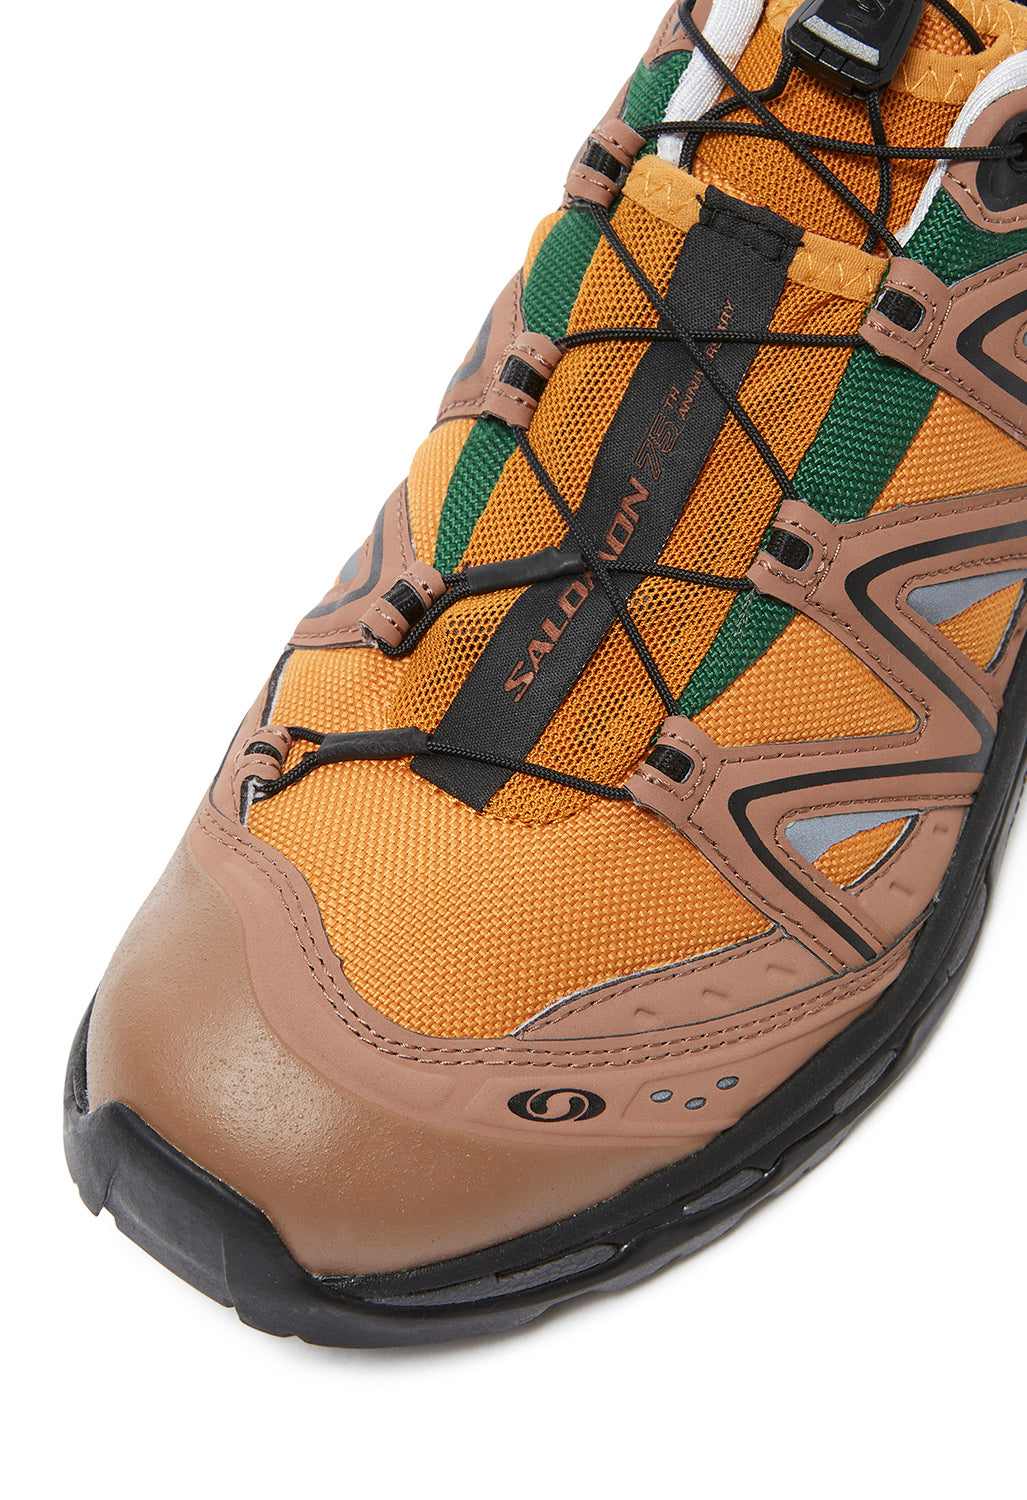 Salomon XT-Quest 75th Shoes - Golden Oak/Acorn/Black – Outsiders ...